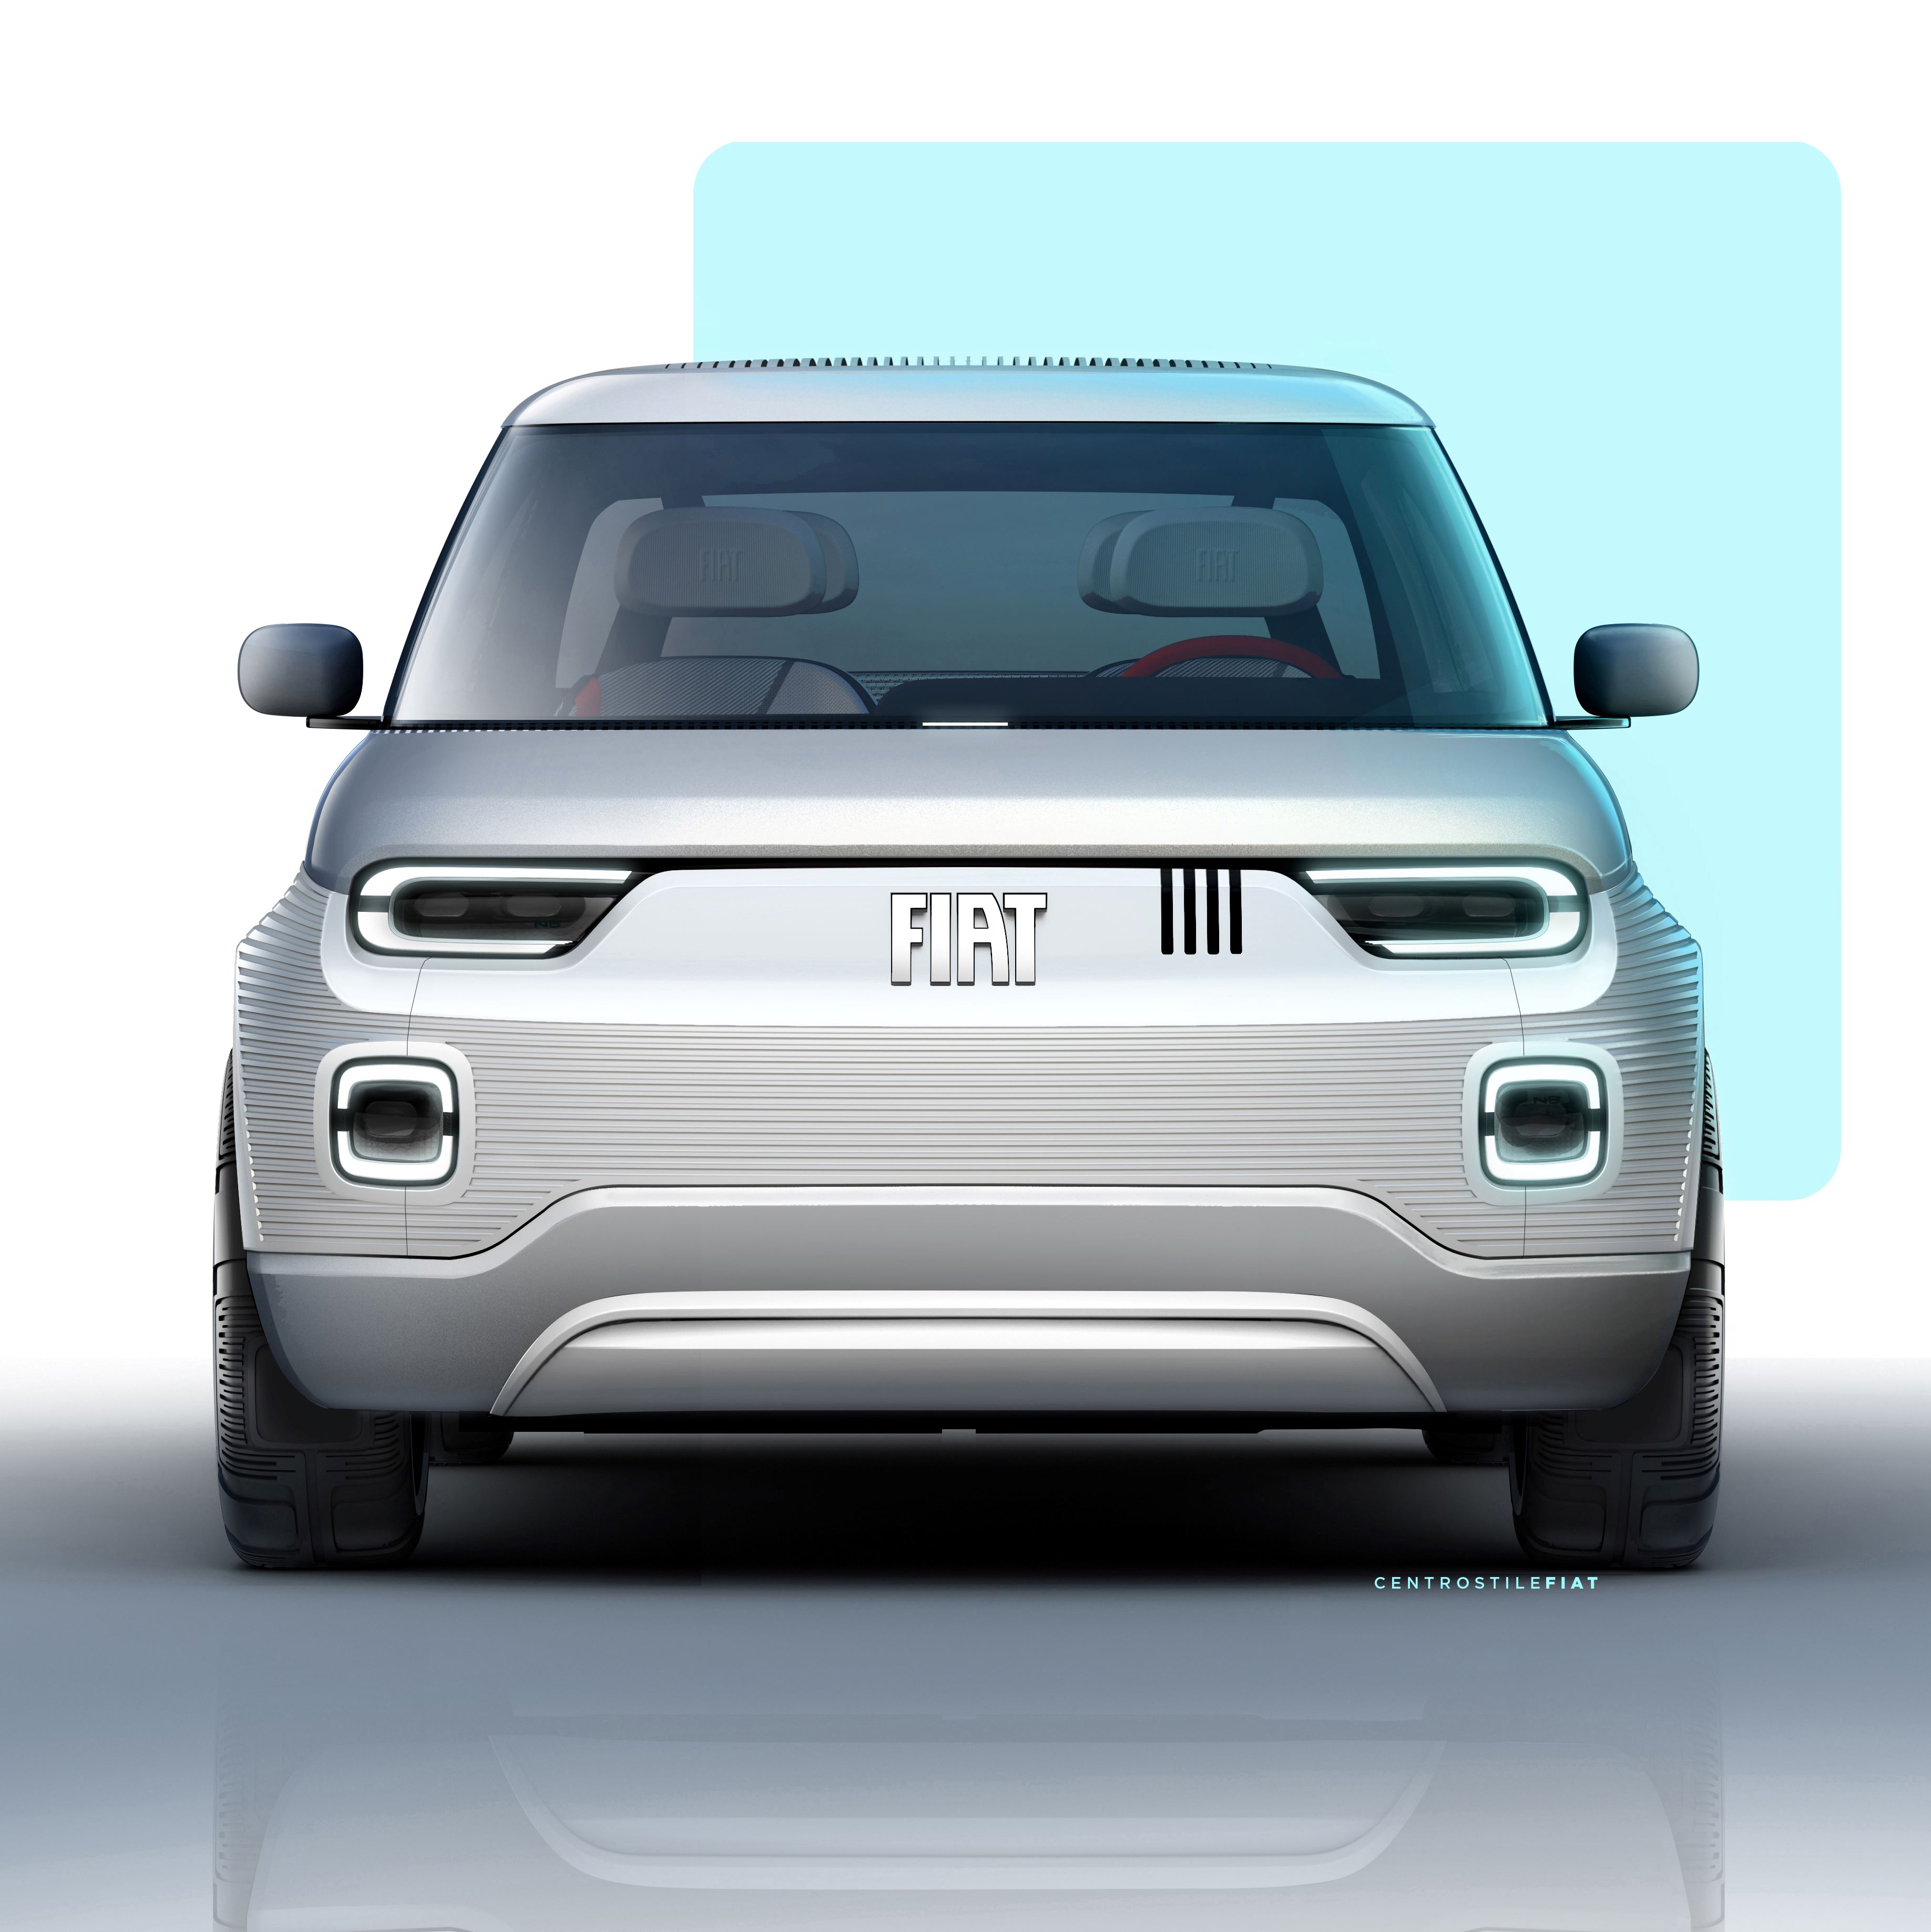 Il prototipo Fiat Centoventi che dovrebbe ispirare le forme della nuova Pandina